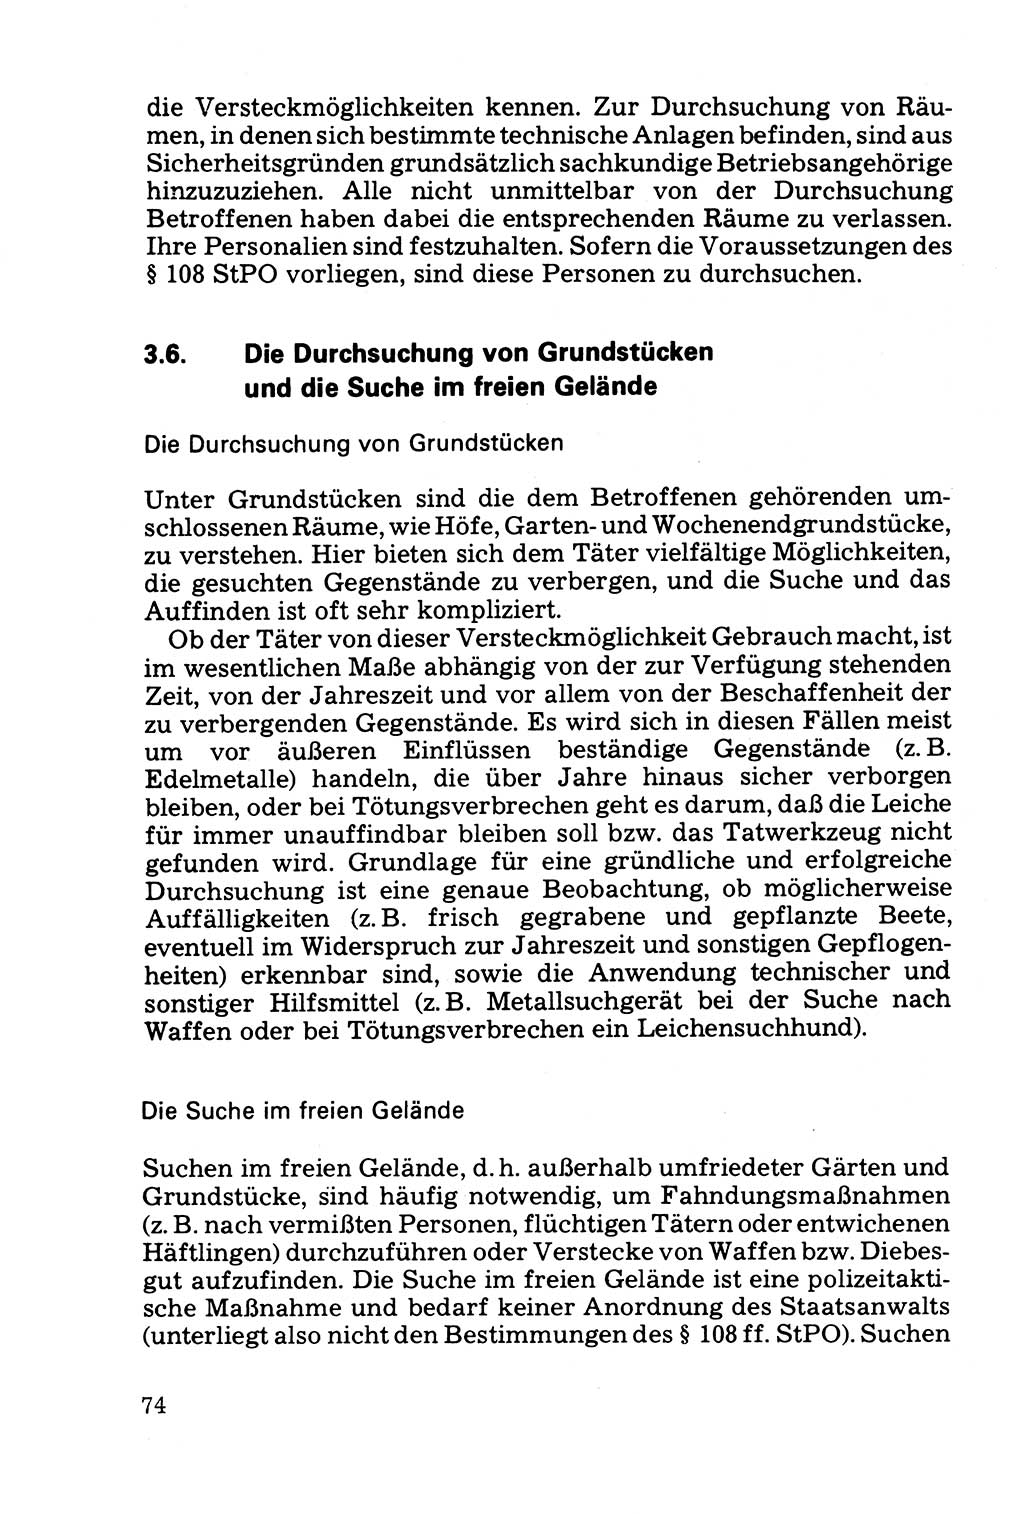 Die Durchsuchung und die Beschlagnahme [Deutsche Demokratische Republik (DDR)] 1979, Seite 74 (Durchs. Beschl. DDR 1979, S. 74)